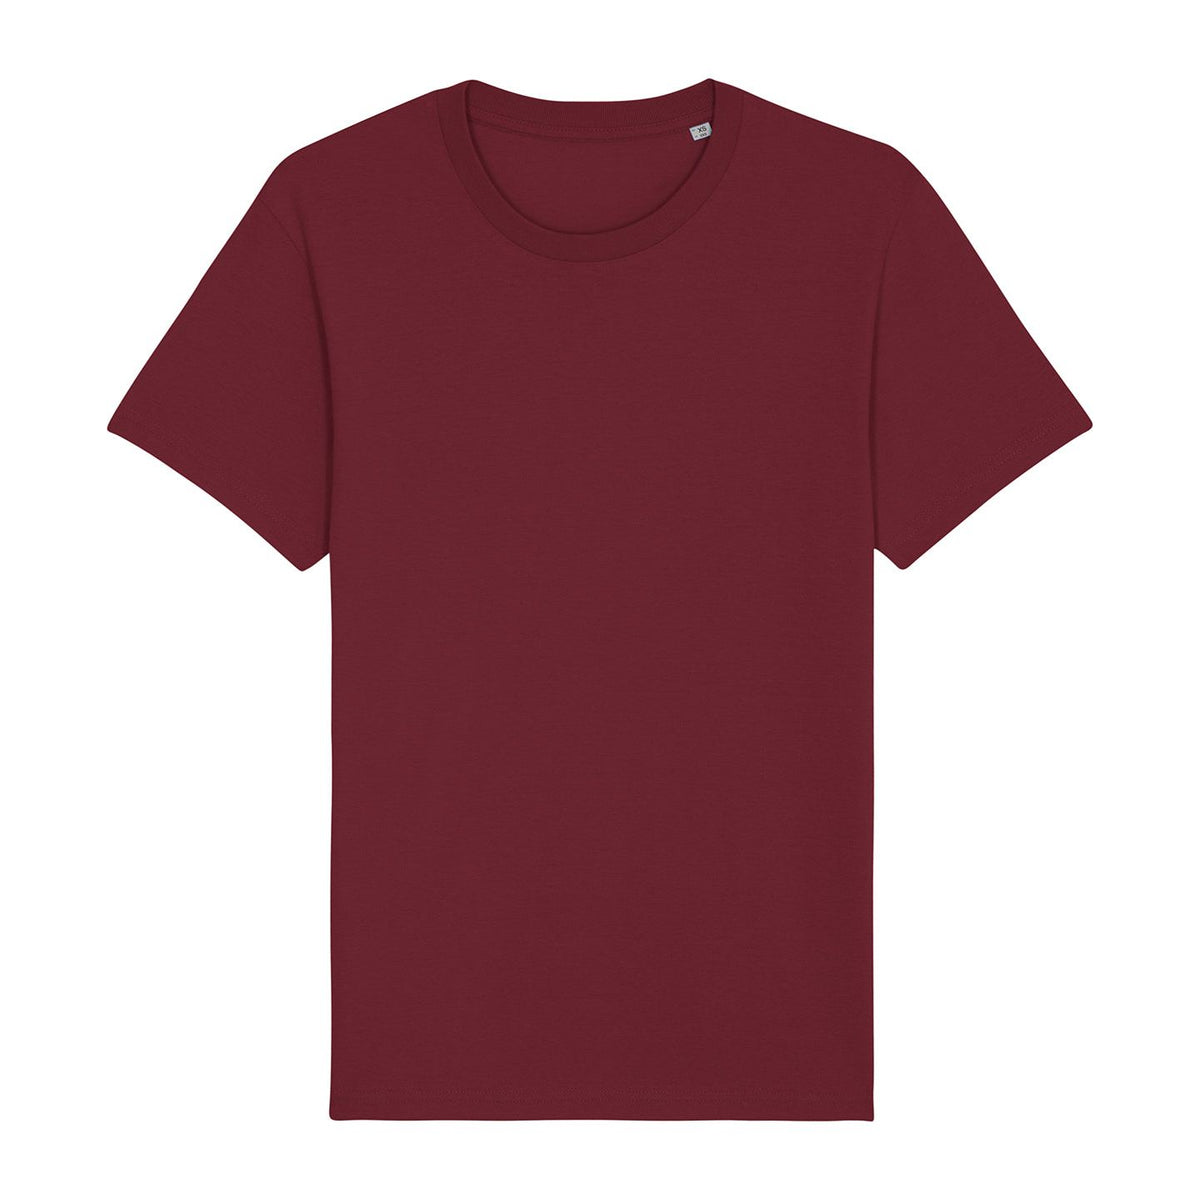 Stanley/Stella Rocker The Essential Unisex T-Shirt